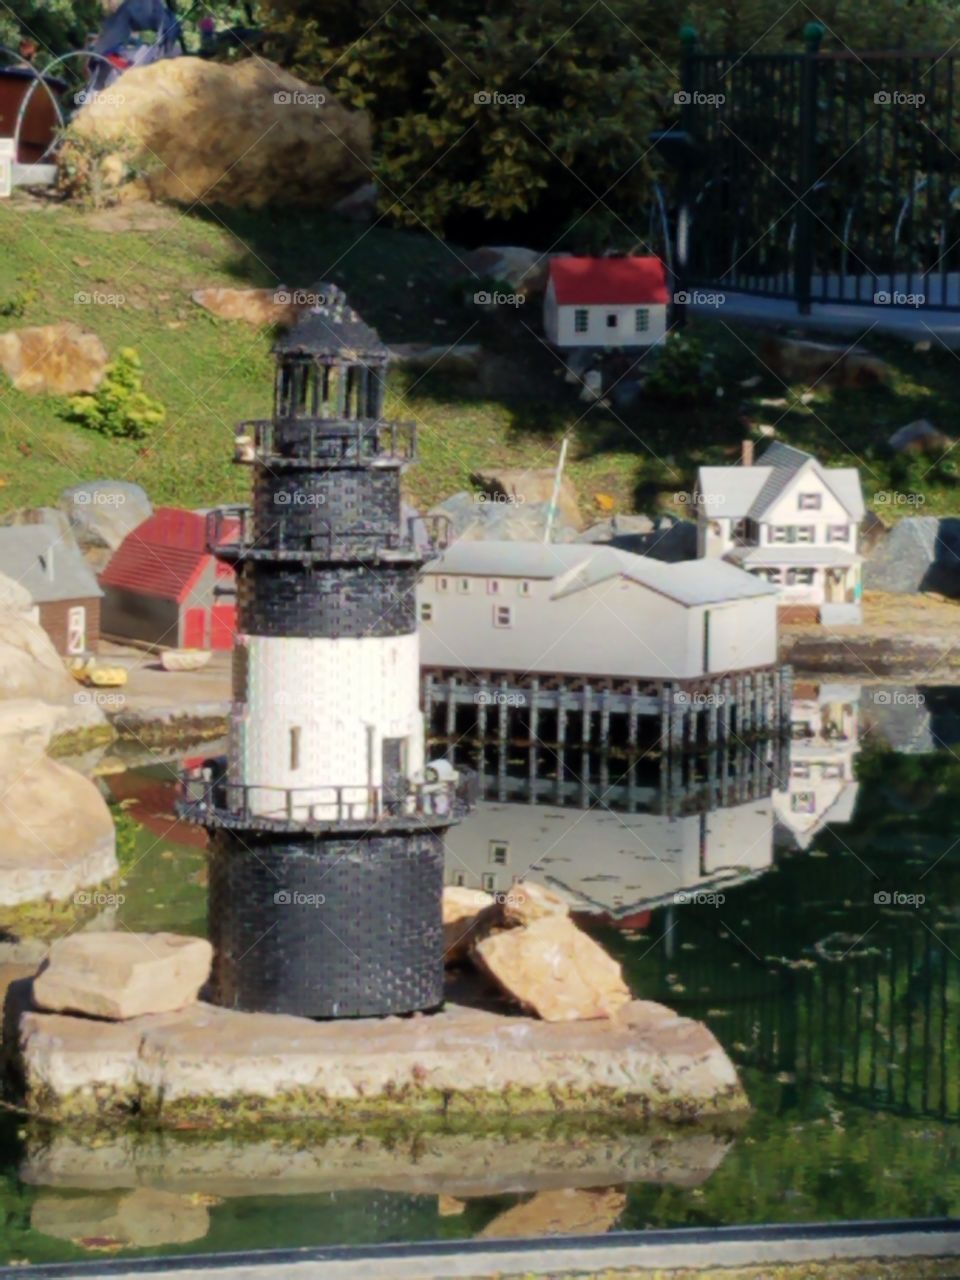 Lego Lighthouse